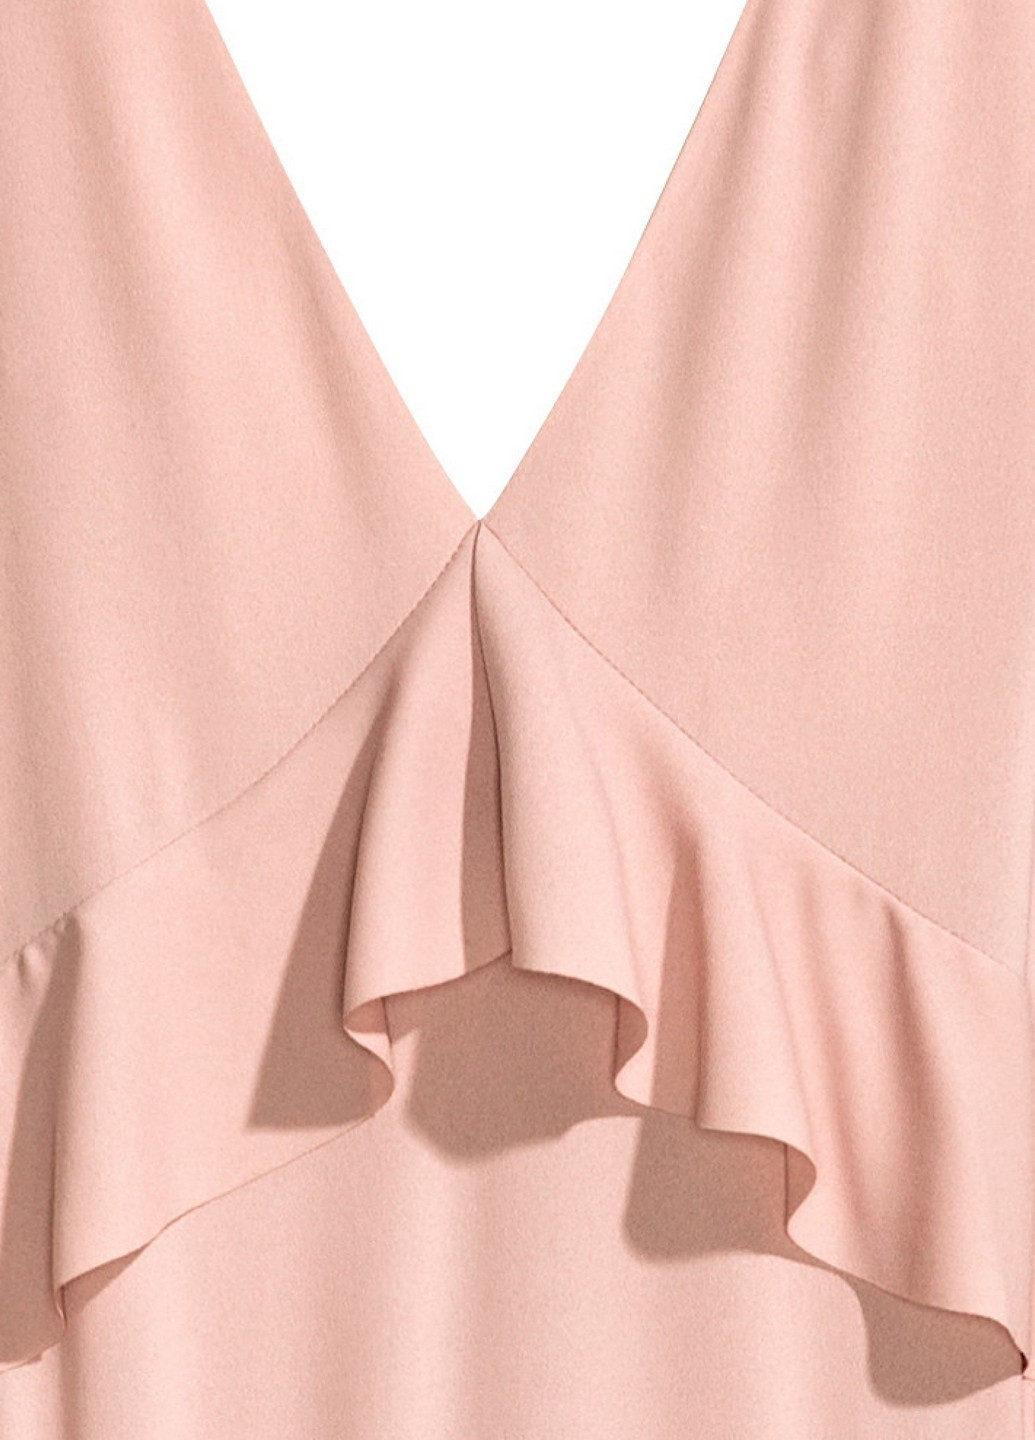 Рожева вечірня плаття, сукня H&M однотонна